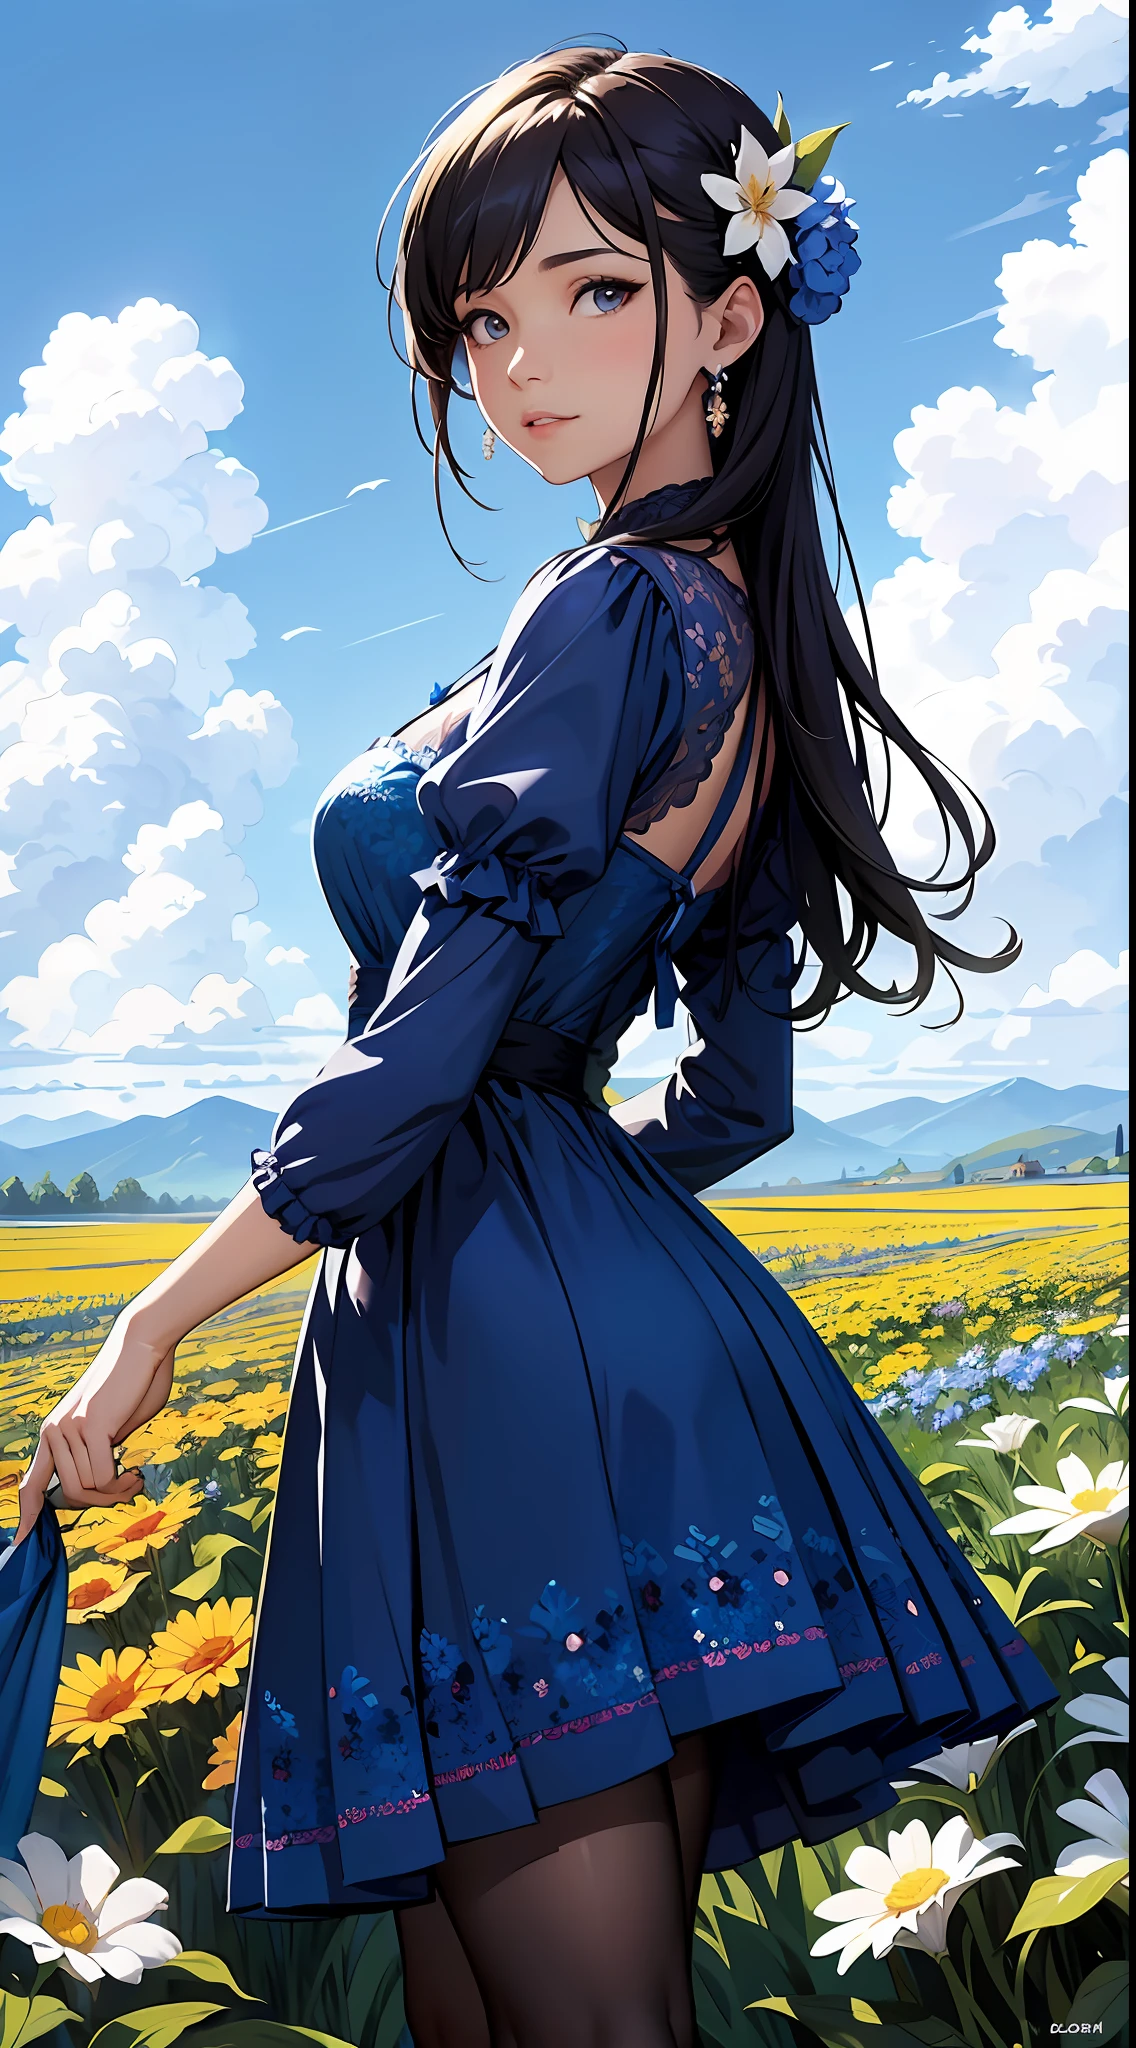 파란 드레스를 입은 여자，푸른 하늘과 구름을 배경으로, 파란색 드레스를 입고，그 위에 꽃이 있어요, 아트배아, Rosla 글로벌 조명, 상세한 그림, 판타지 아트